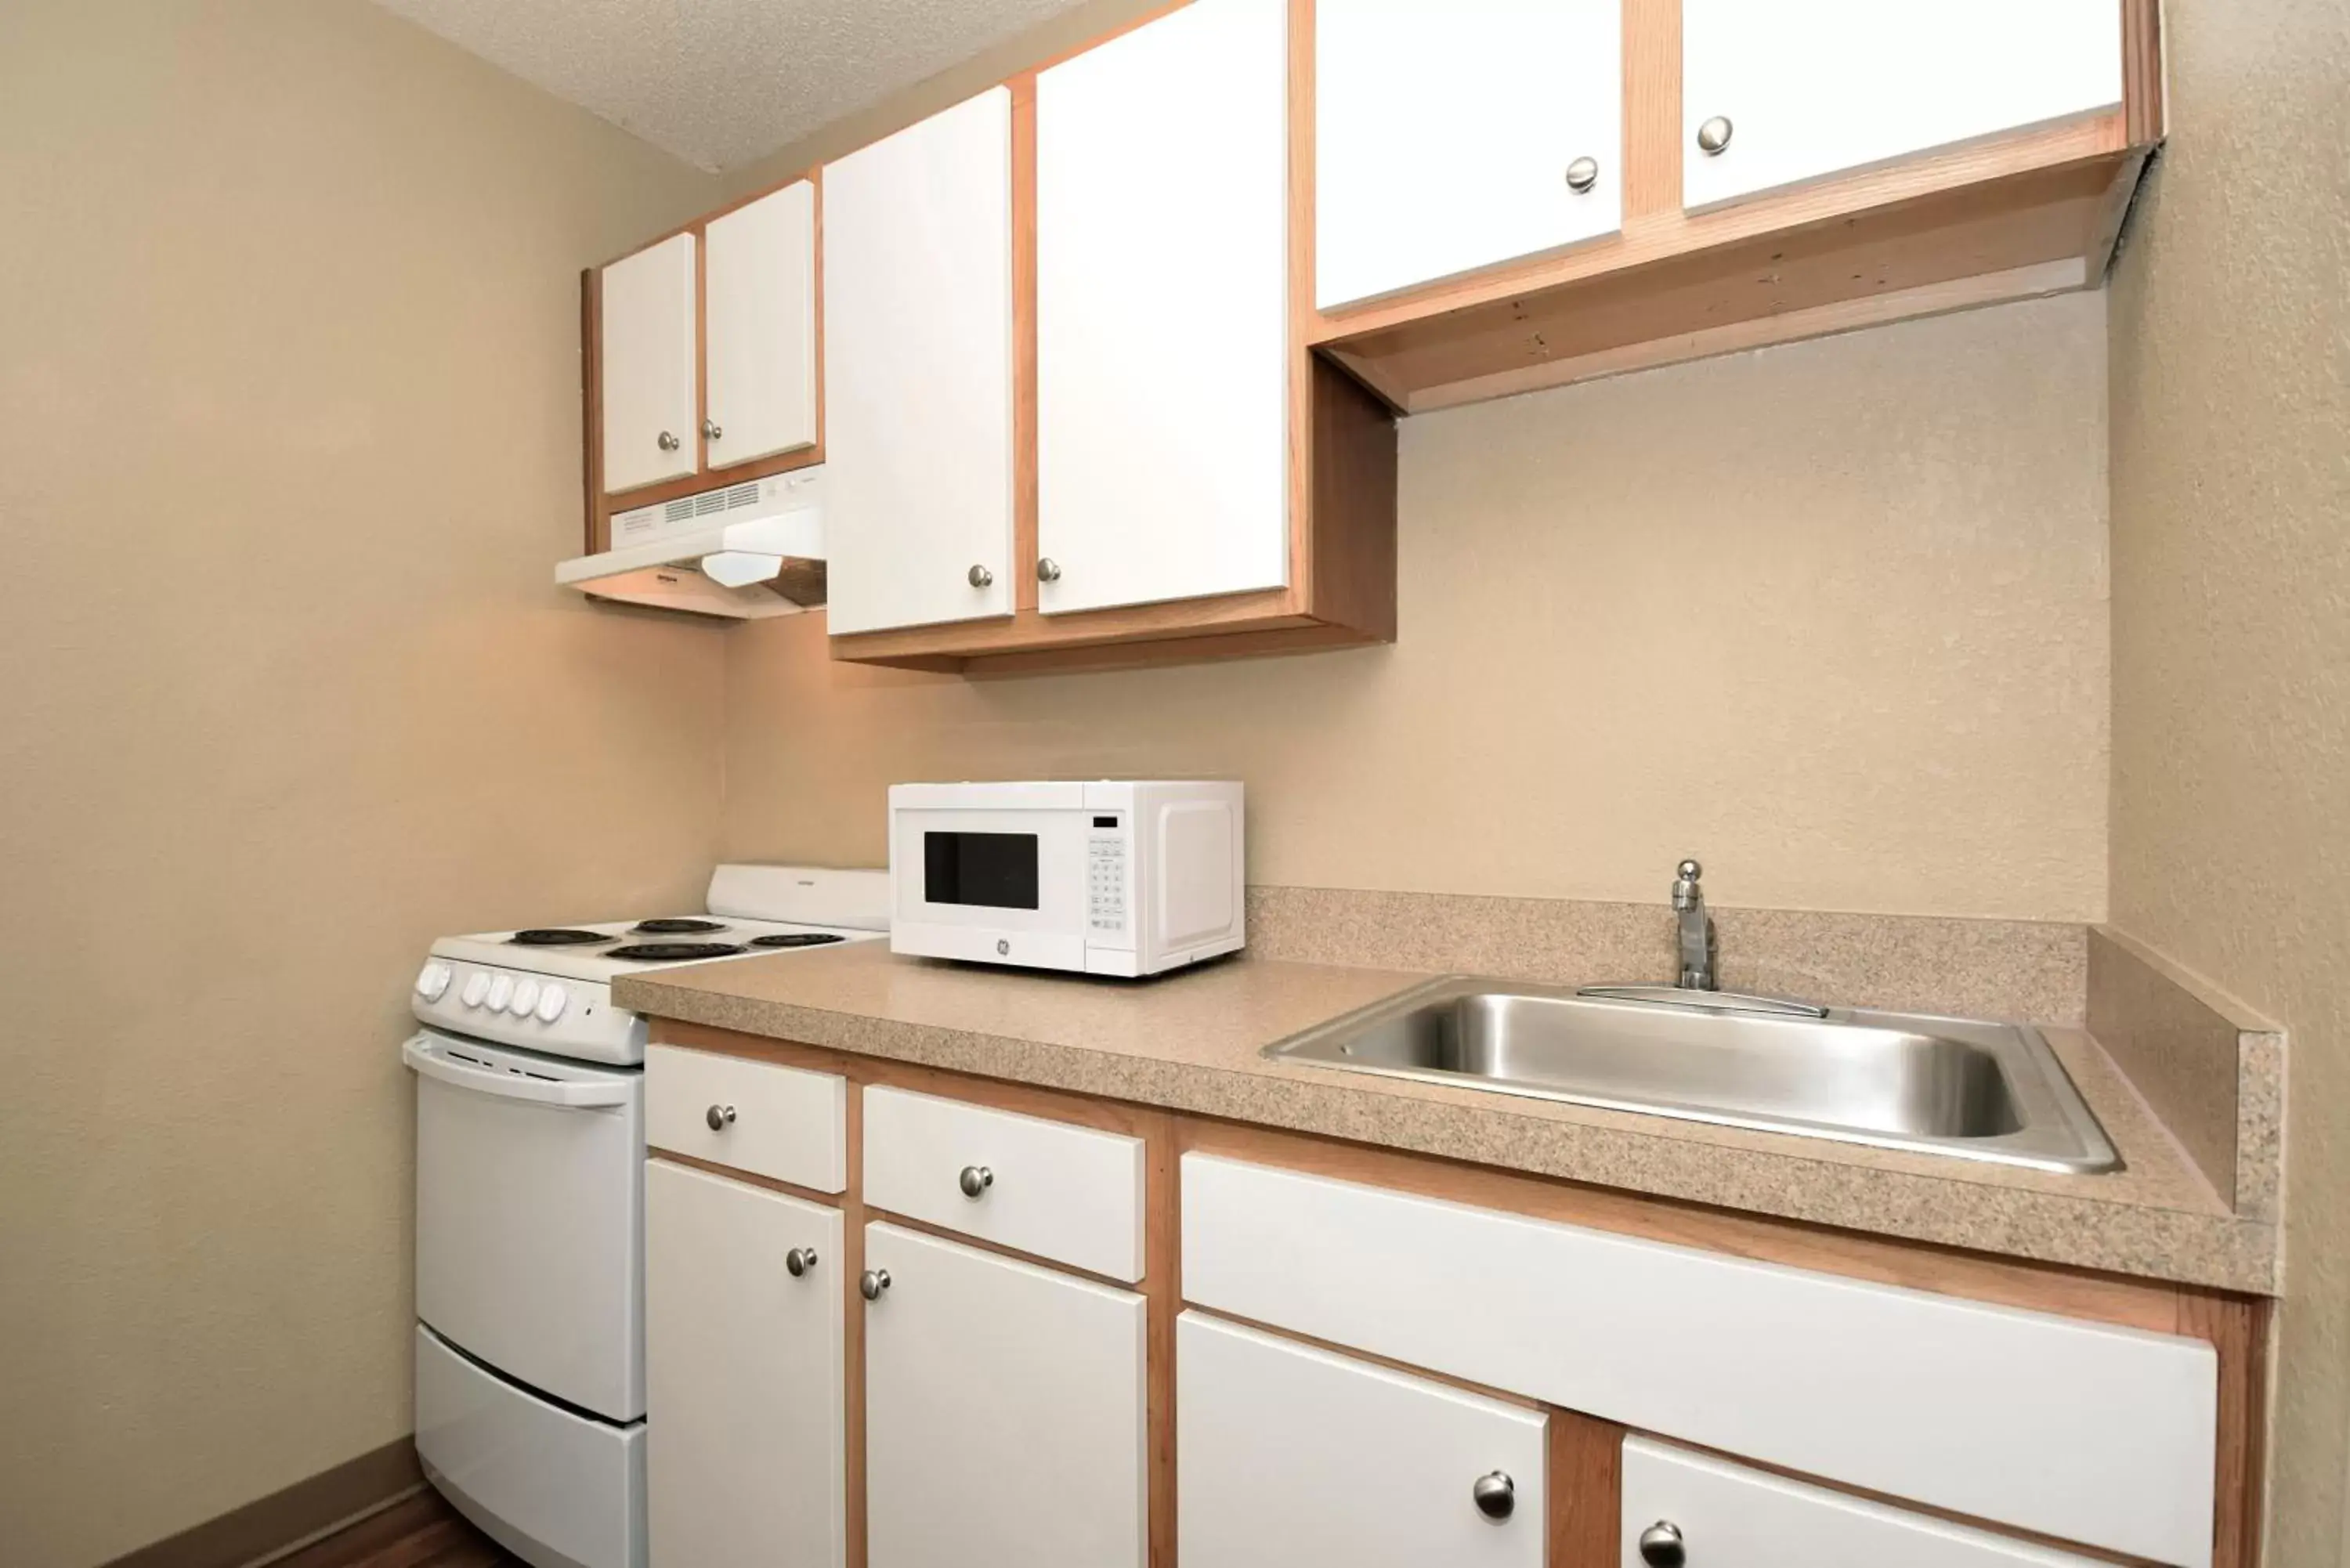 Kitchen or kitchenette, Kitchen/Kitchenette in Extended Stay America Select Suites - Dallas - Las Colinas - Meadow Creek Dr